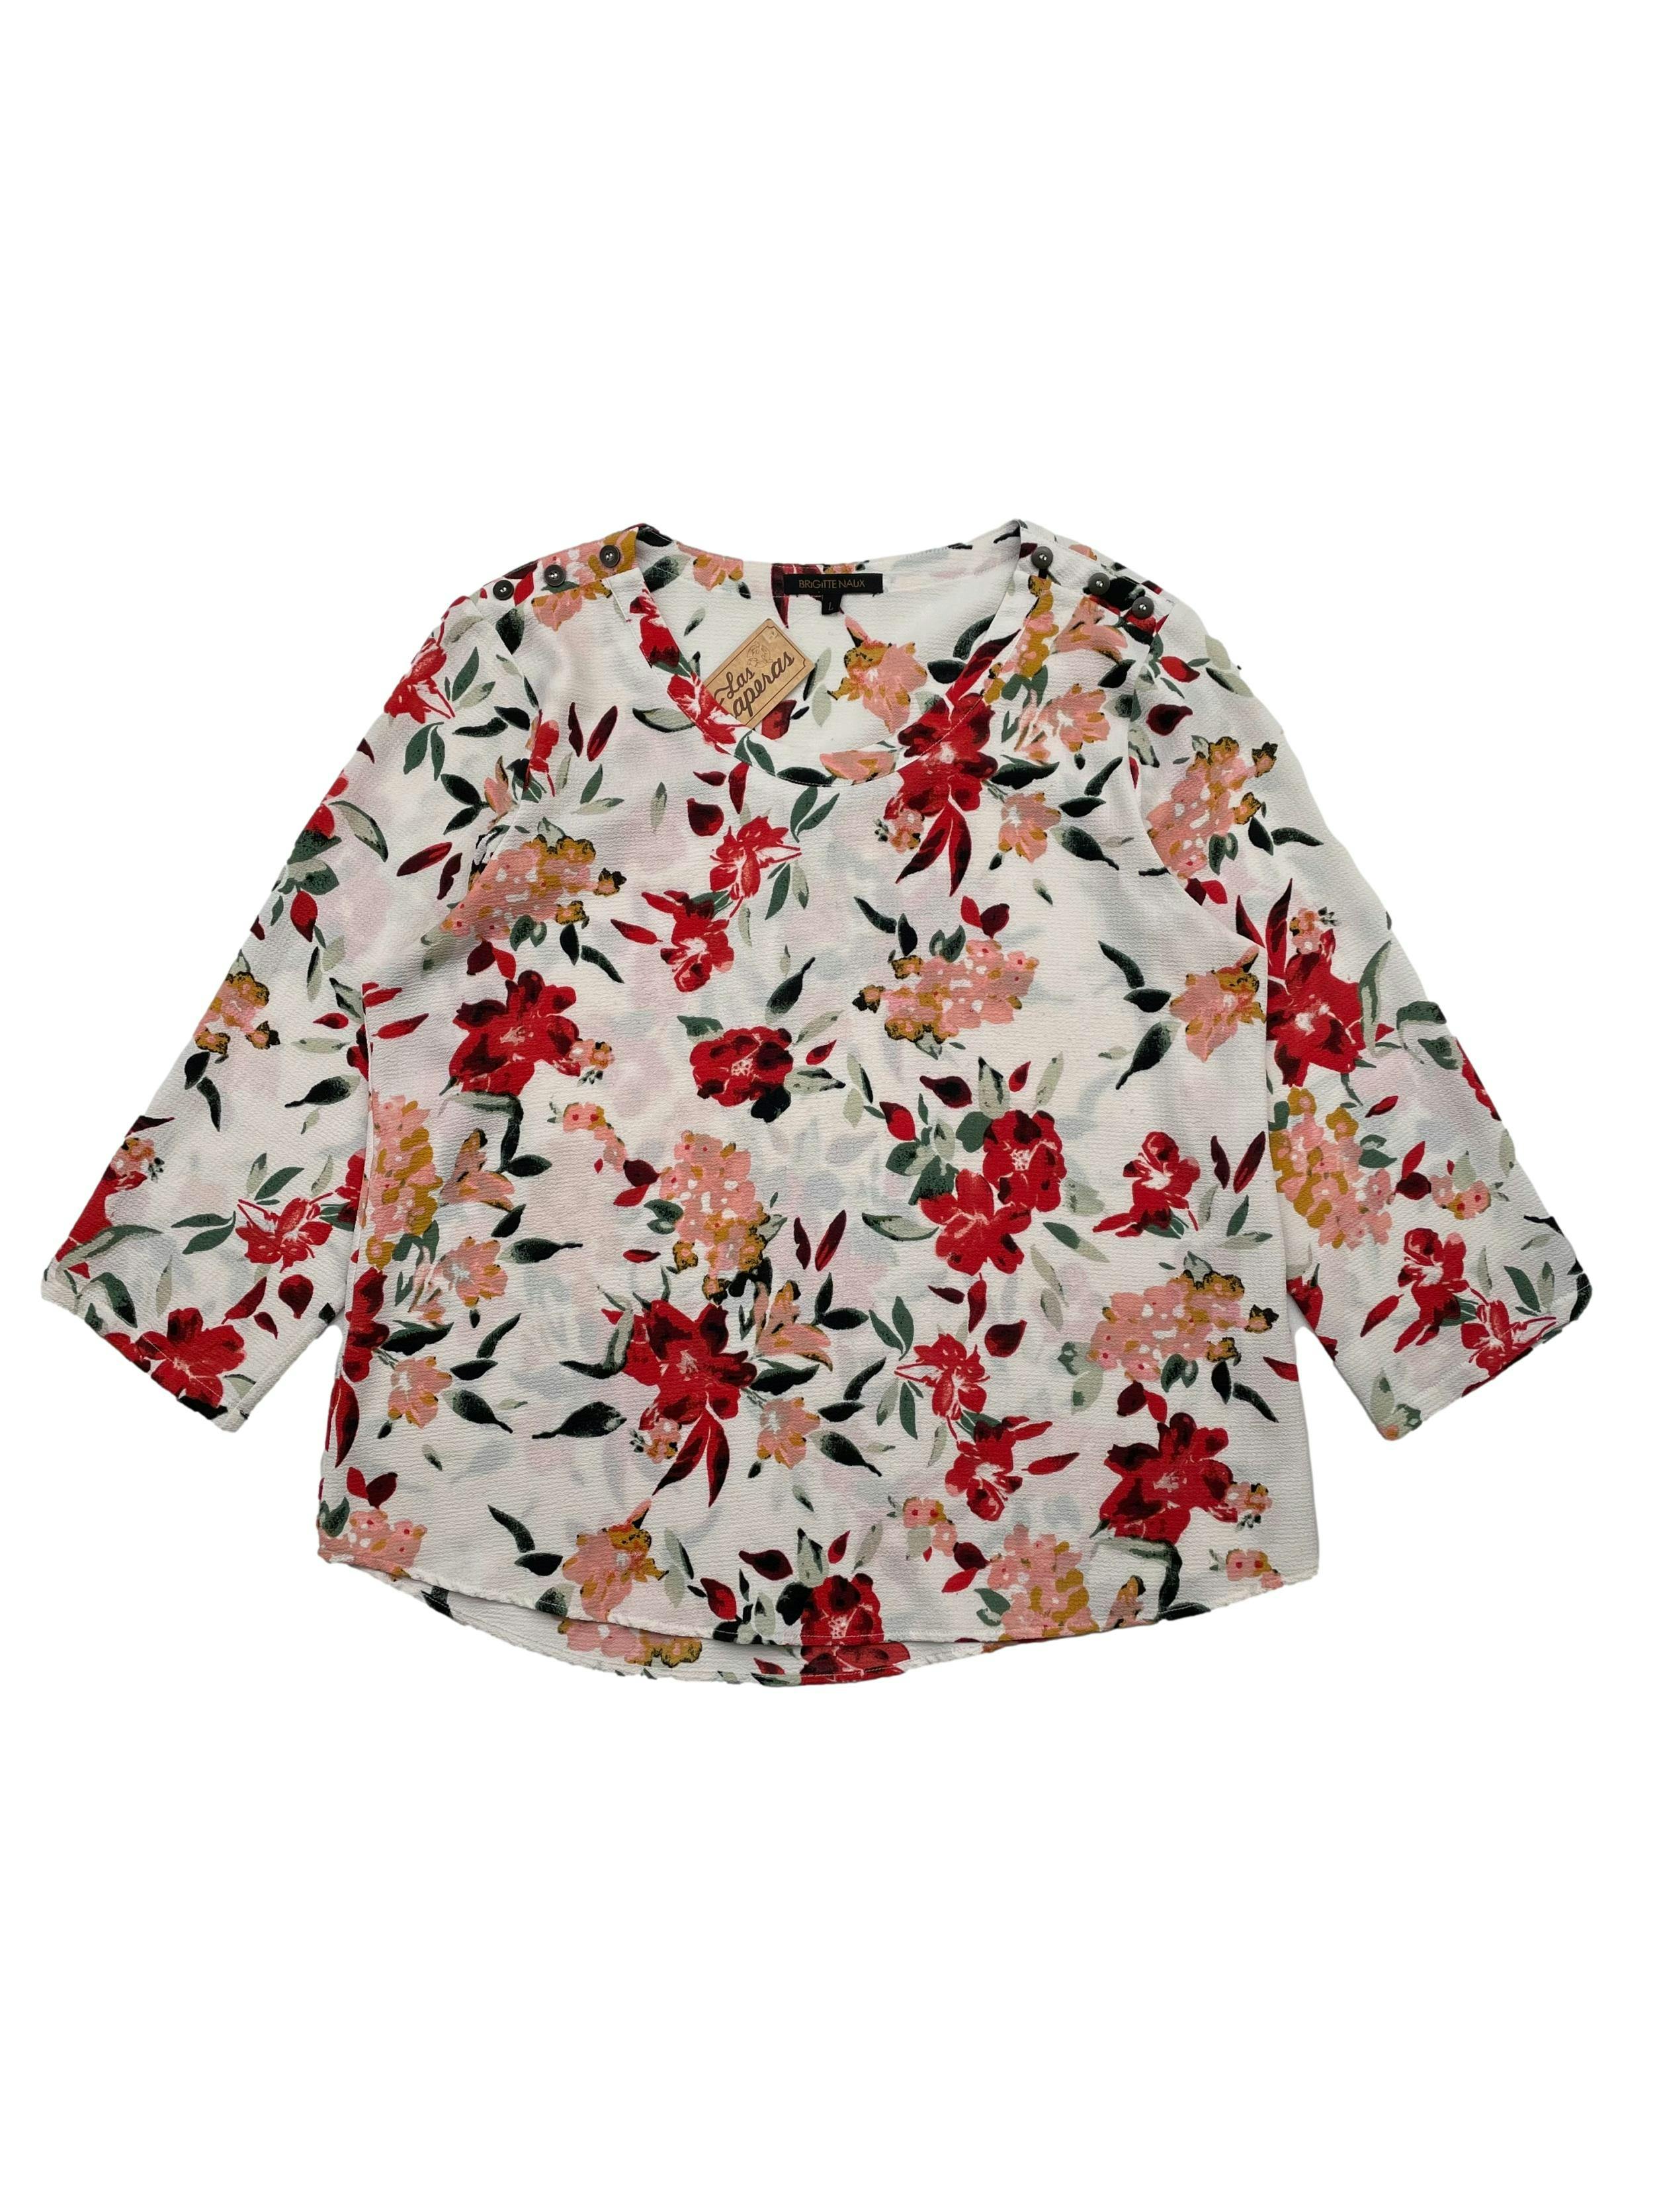 Blusa Brigitte Naux crema con estampado floral en crepe, botones decorativos en hombros.Busto 110cm, Largo 62cm.